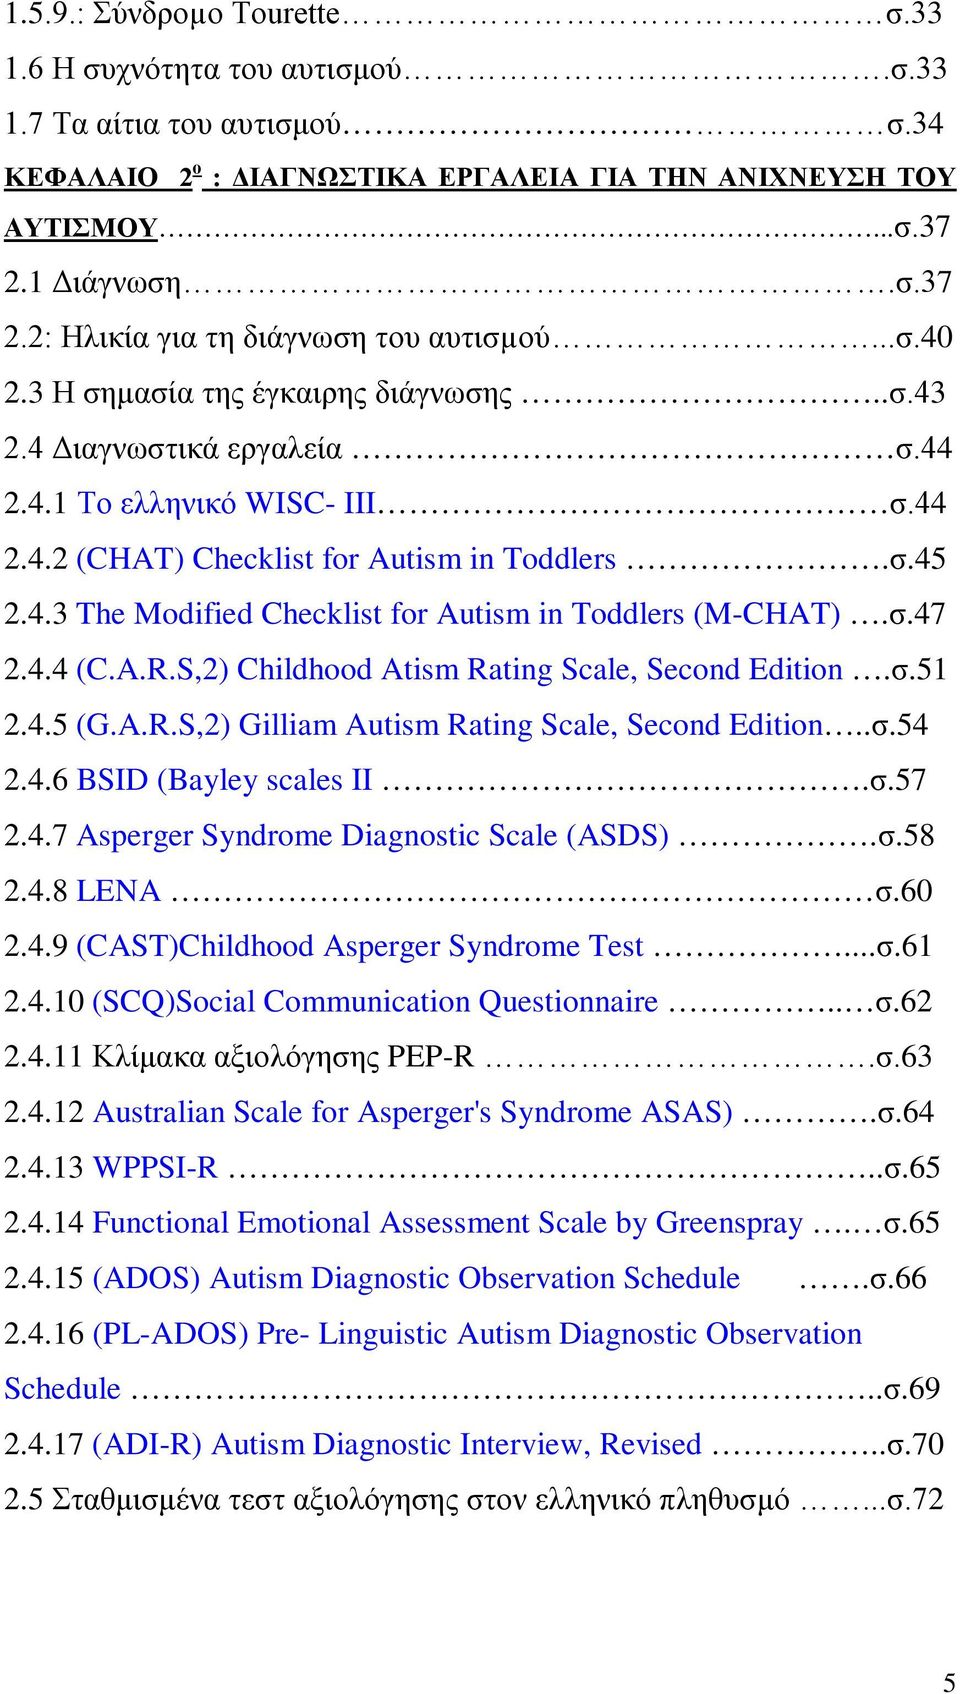 σ.45 2.4.3 The Modified Checklist for Autism in Toddlers (M-CHAT).σ.47 2.4.4 (C.A.R.S,2) Childhood Atism Rating Scale, Second Edition.σ.51 2.4.5 (G.A.R.S,2) Gilliam Autism Rating Scale, Second Edition.